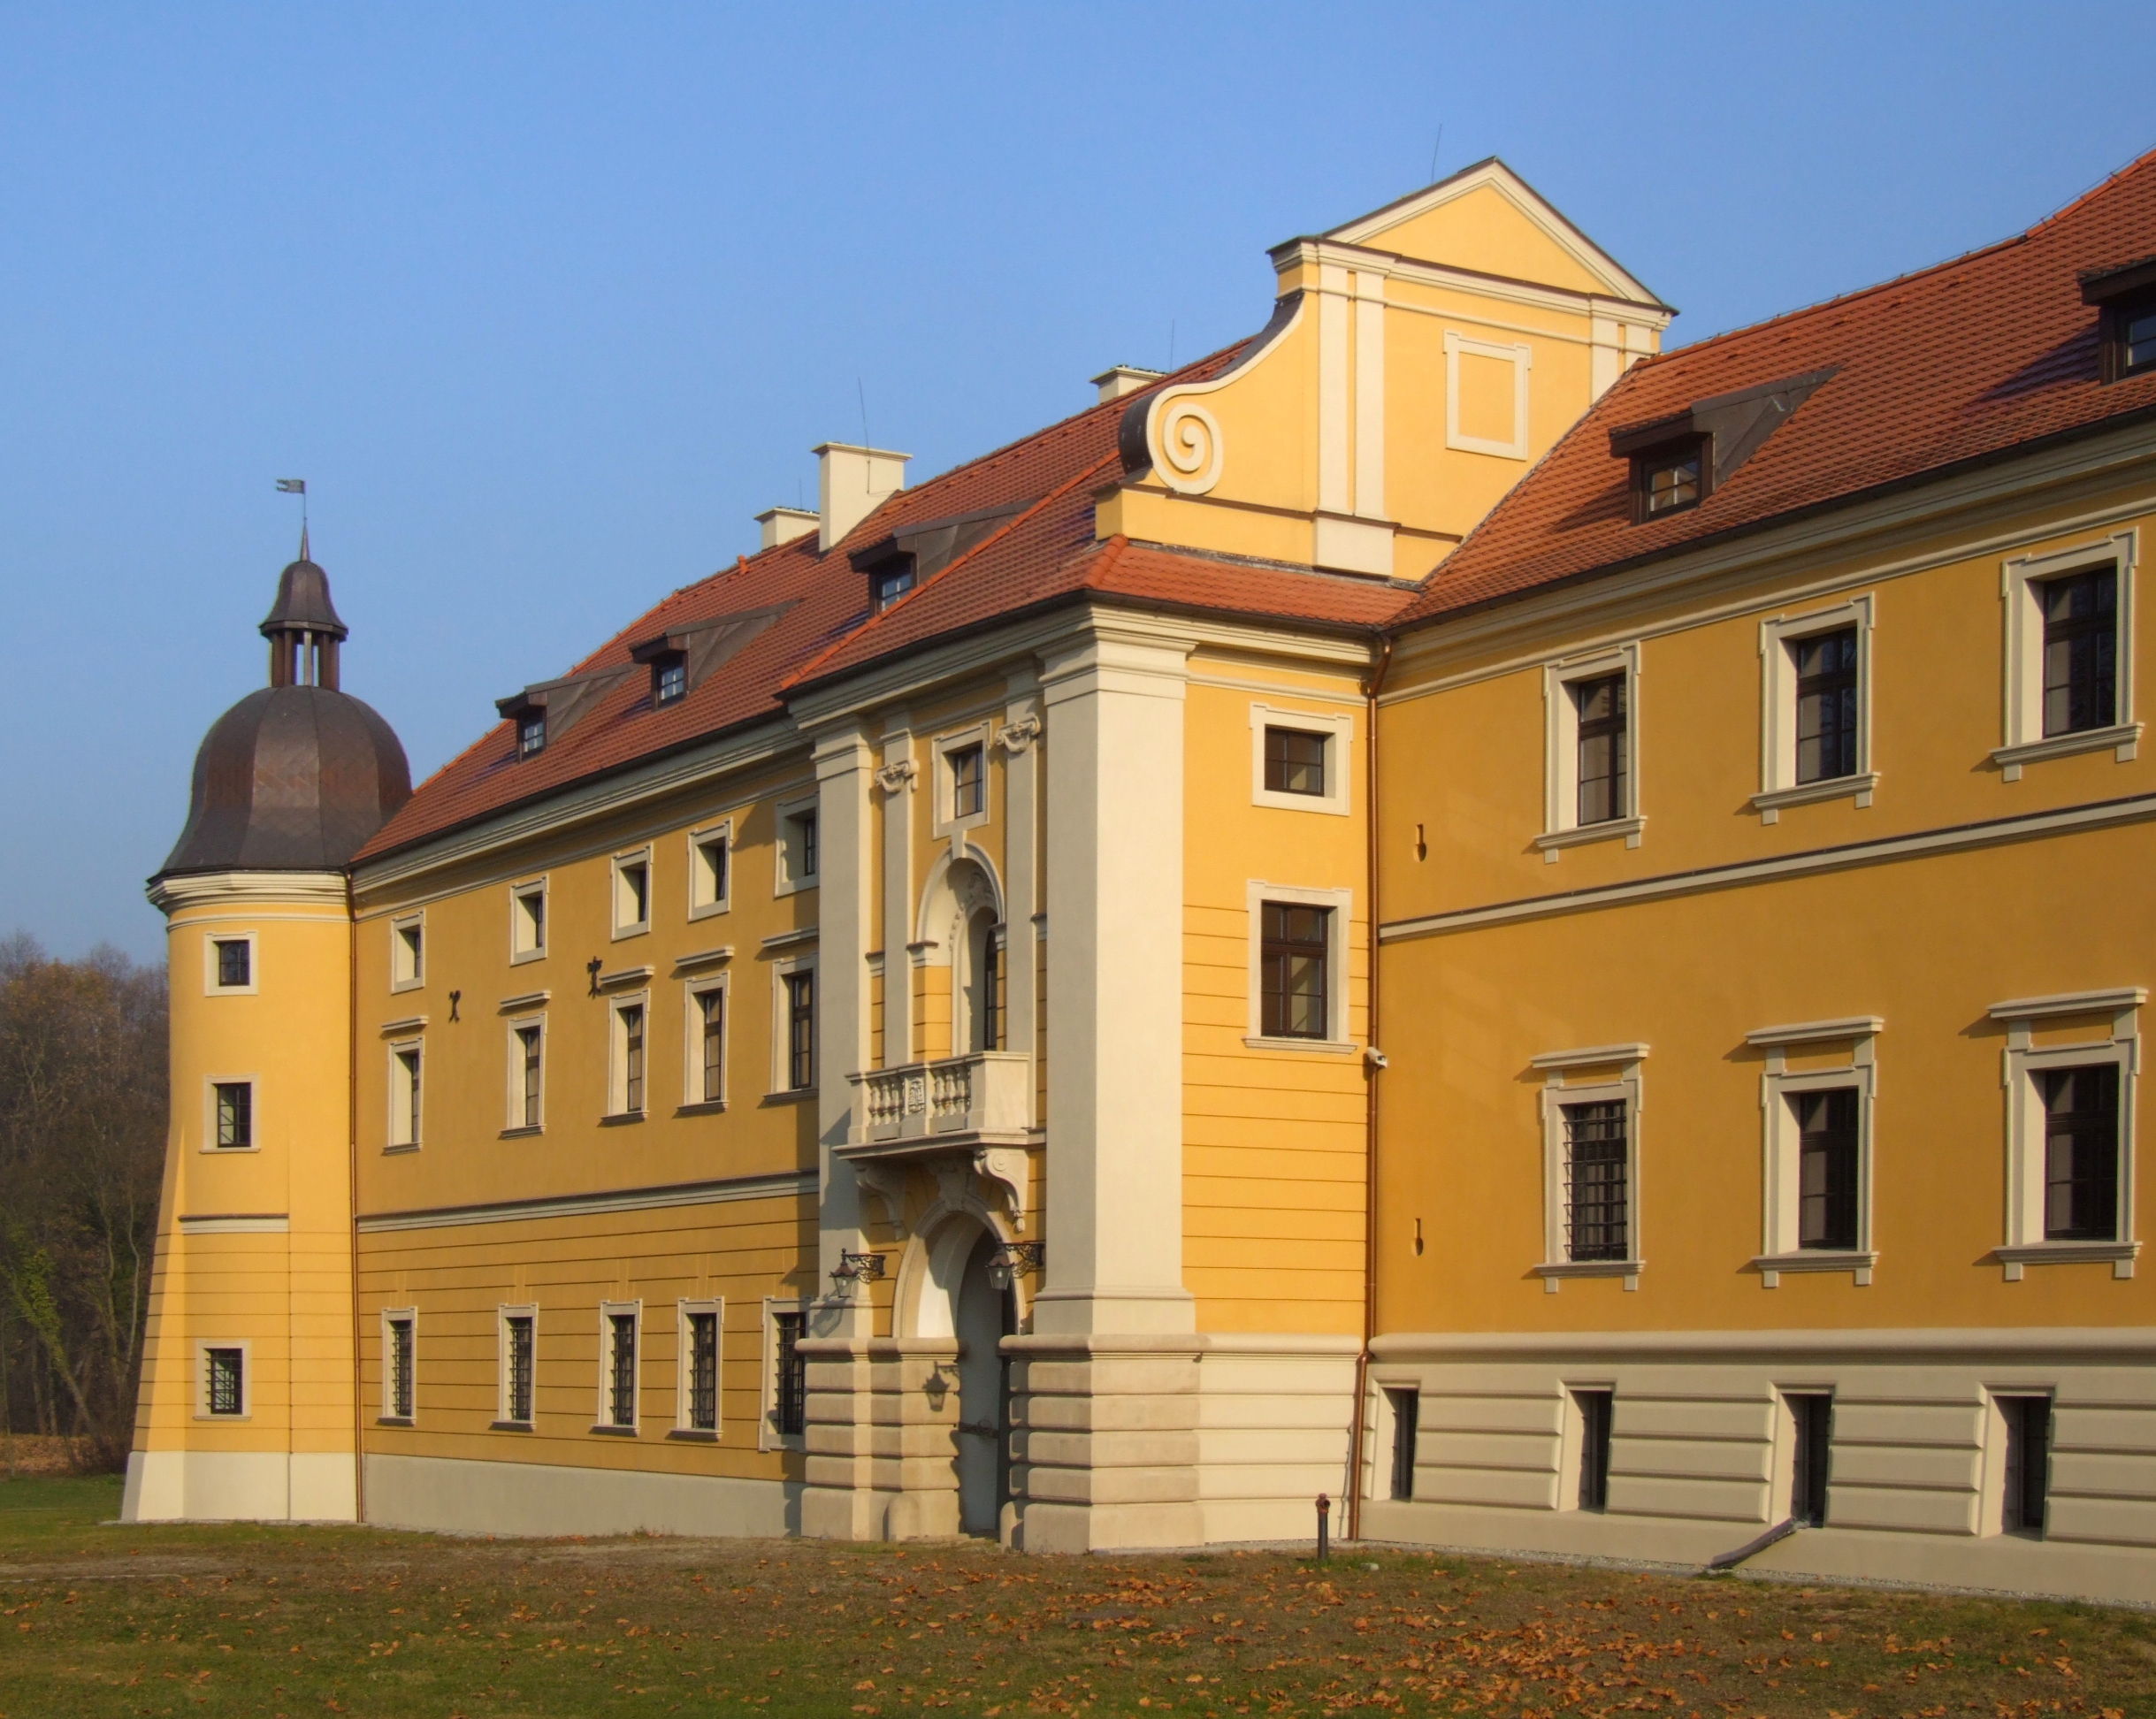 Kloster Groß Rauden in 2011